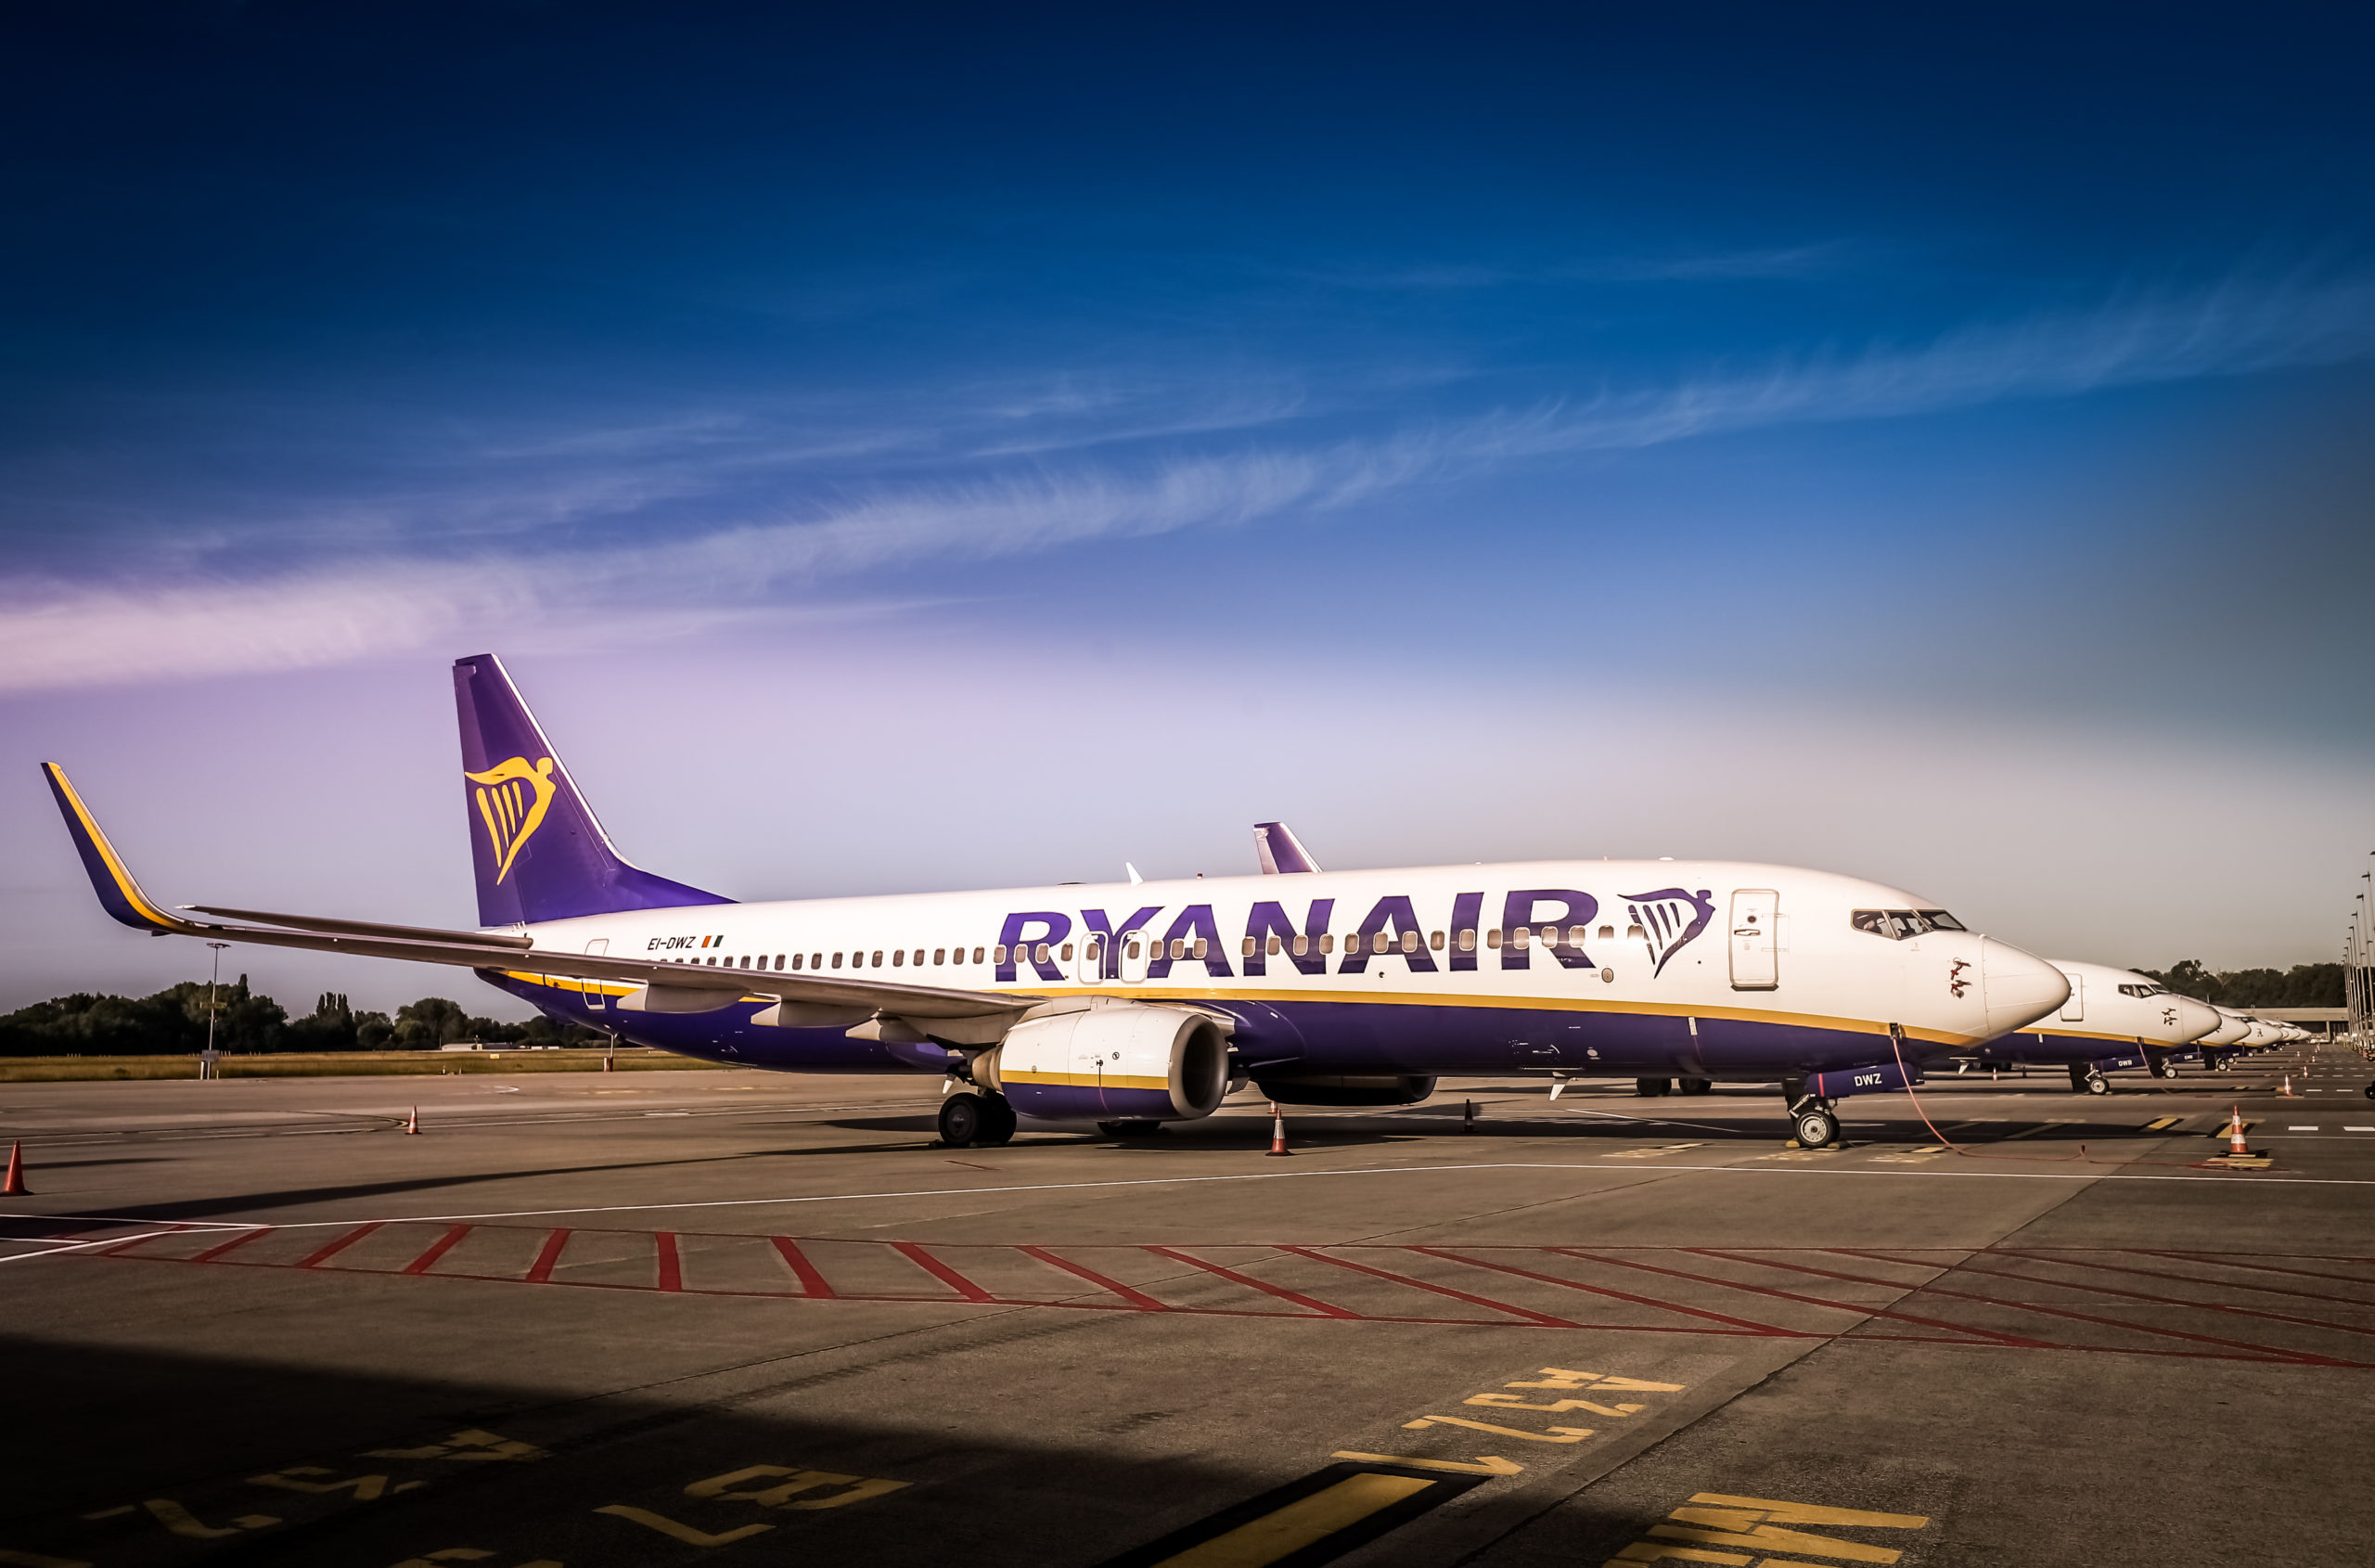 Ryanair has its eye on Brussels Airlines’ slots